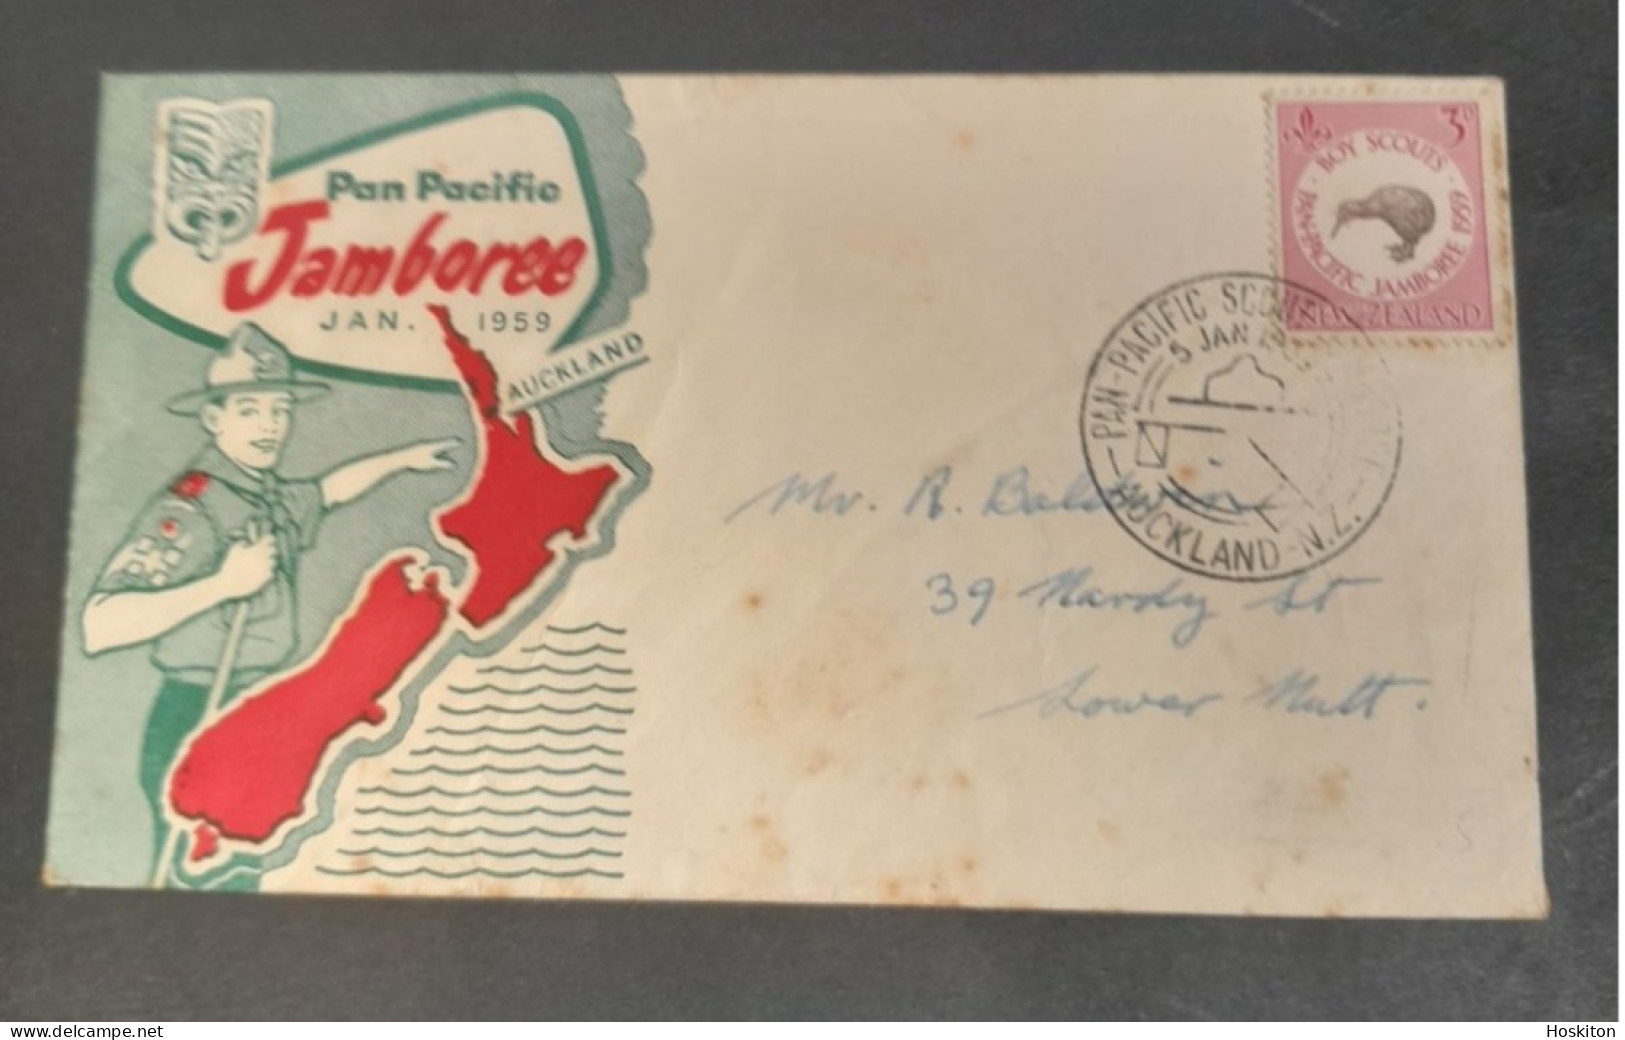 Pan Pacific Jamboree 1959 Auckland NZ - Briefe U. Dokumente